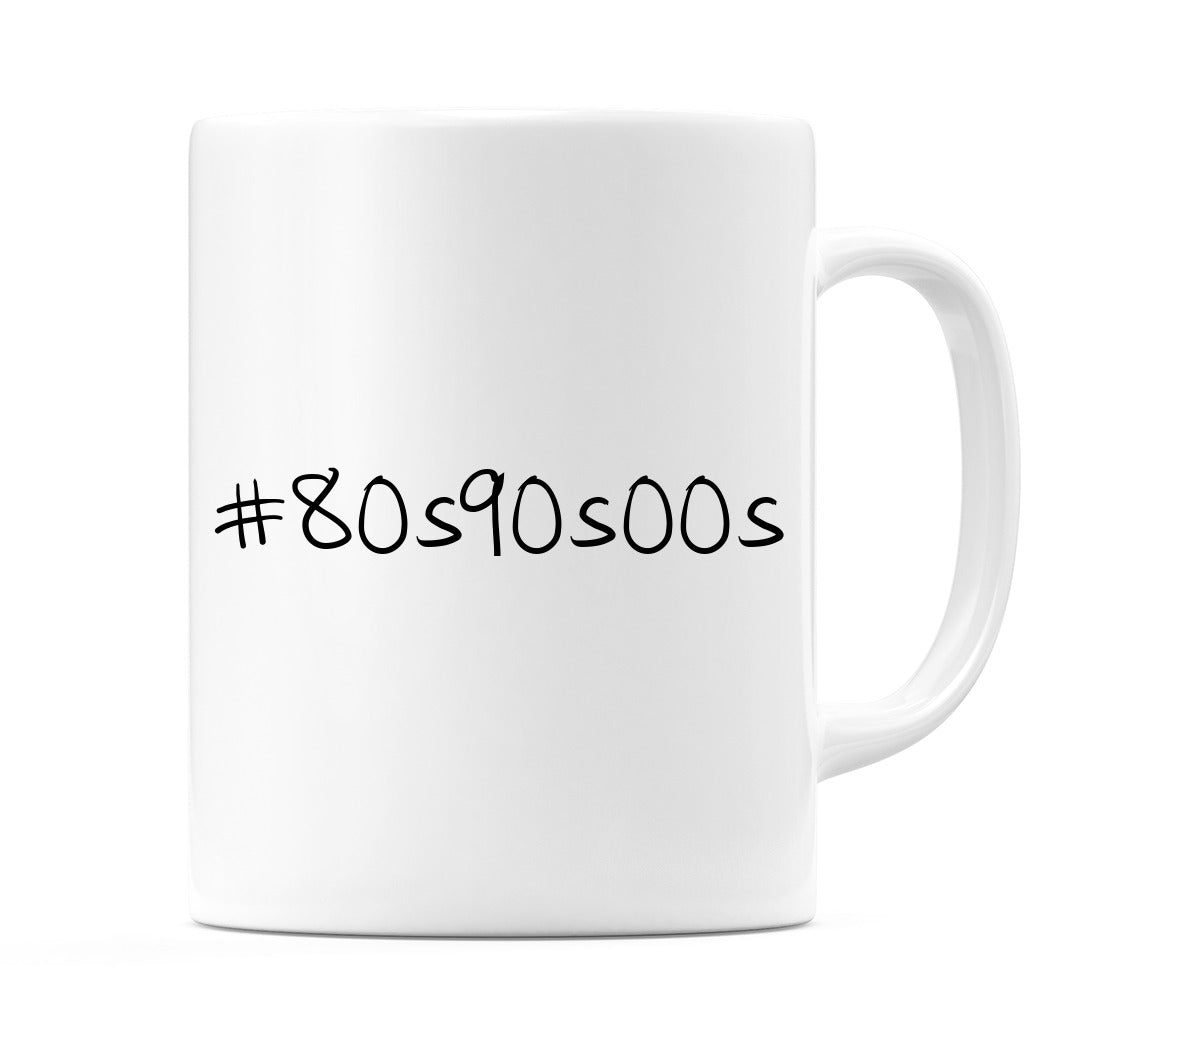 #80s90s00s Mug